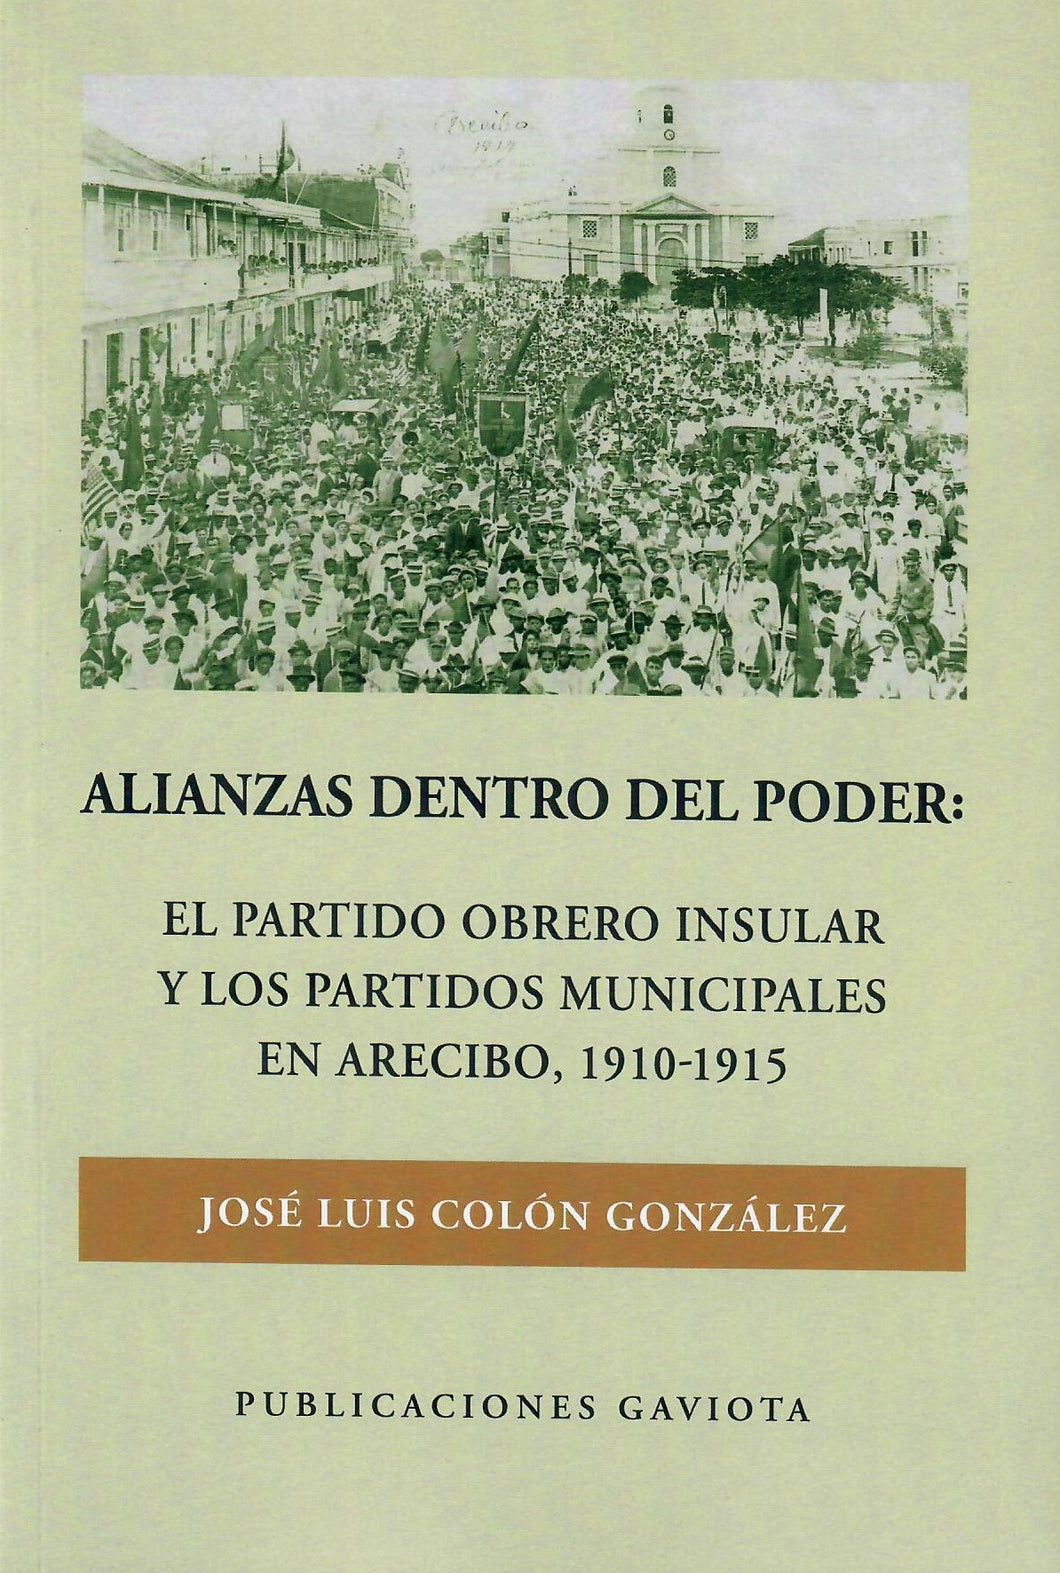 ALIANZAS DENTRO DEL PODER - José Luis Colón González